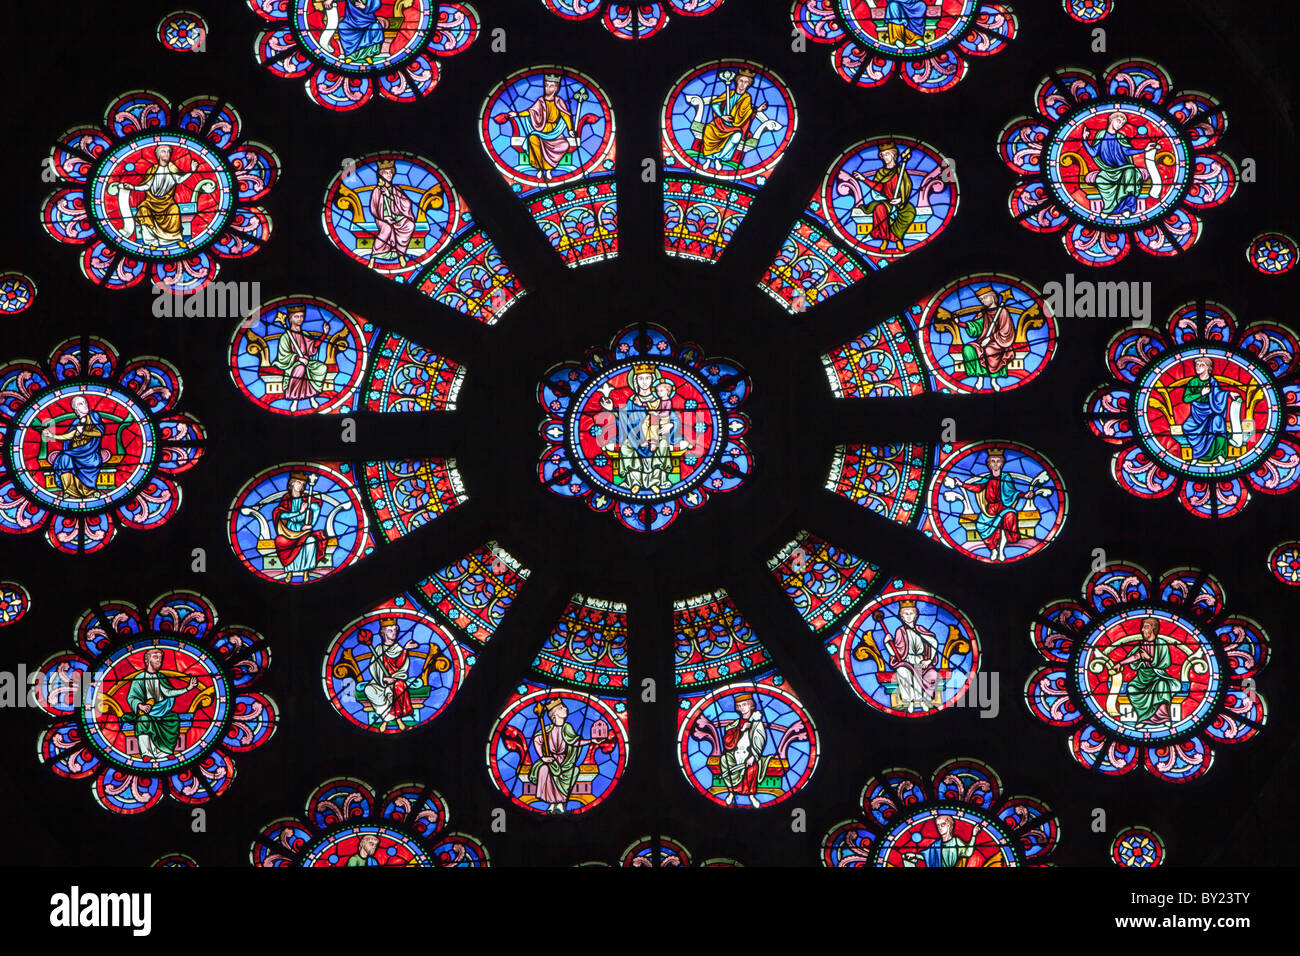 Frankreich, Aquitaine, Pau.  Ein Glasfenster in der Kirche St. Martin in Pau, deren Architekt Boeswillwald inspiriert wurde Stockfoto